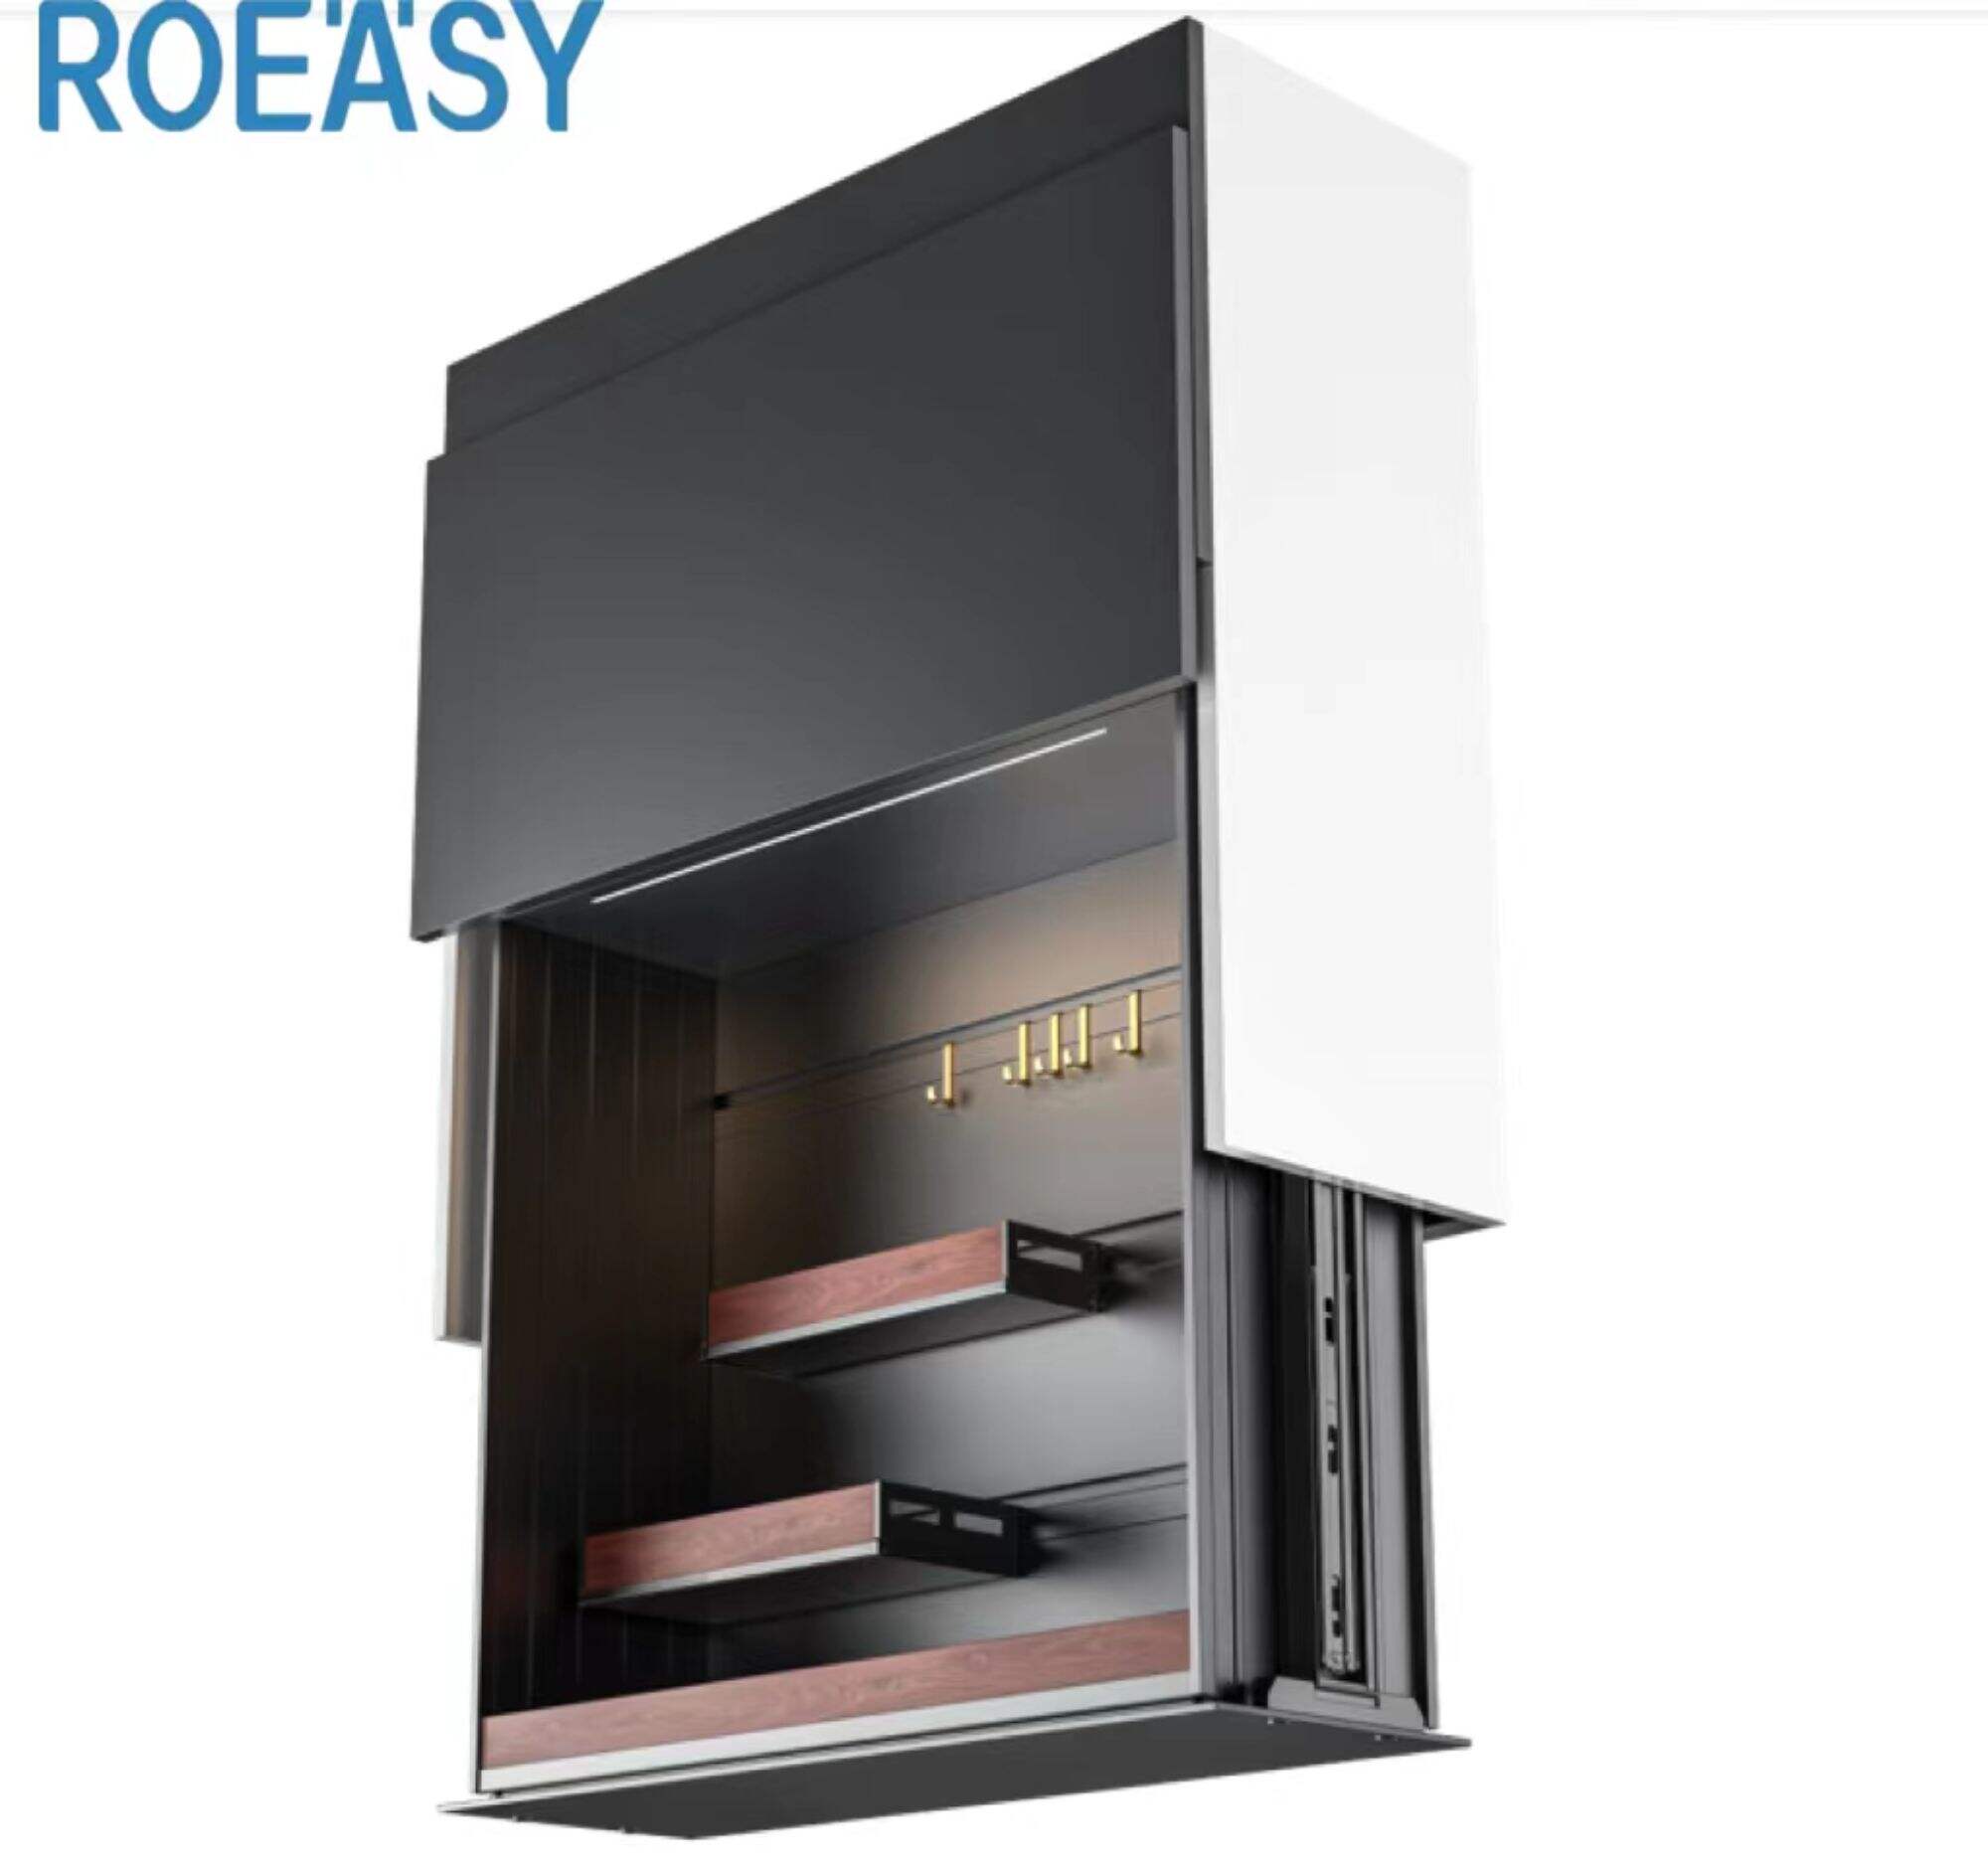 Roeasy Slide-UP01 smart Kitchen intelligent elevator modular storage kitchen cabinet storage stand alone cabinet storage cabinet kitchen